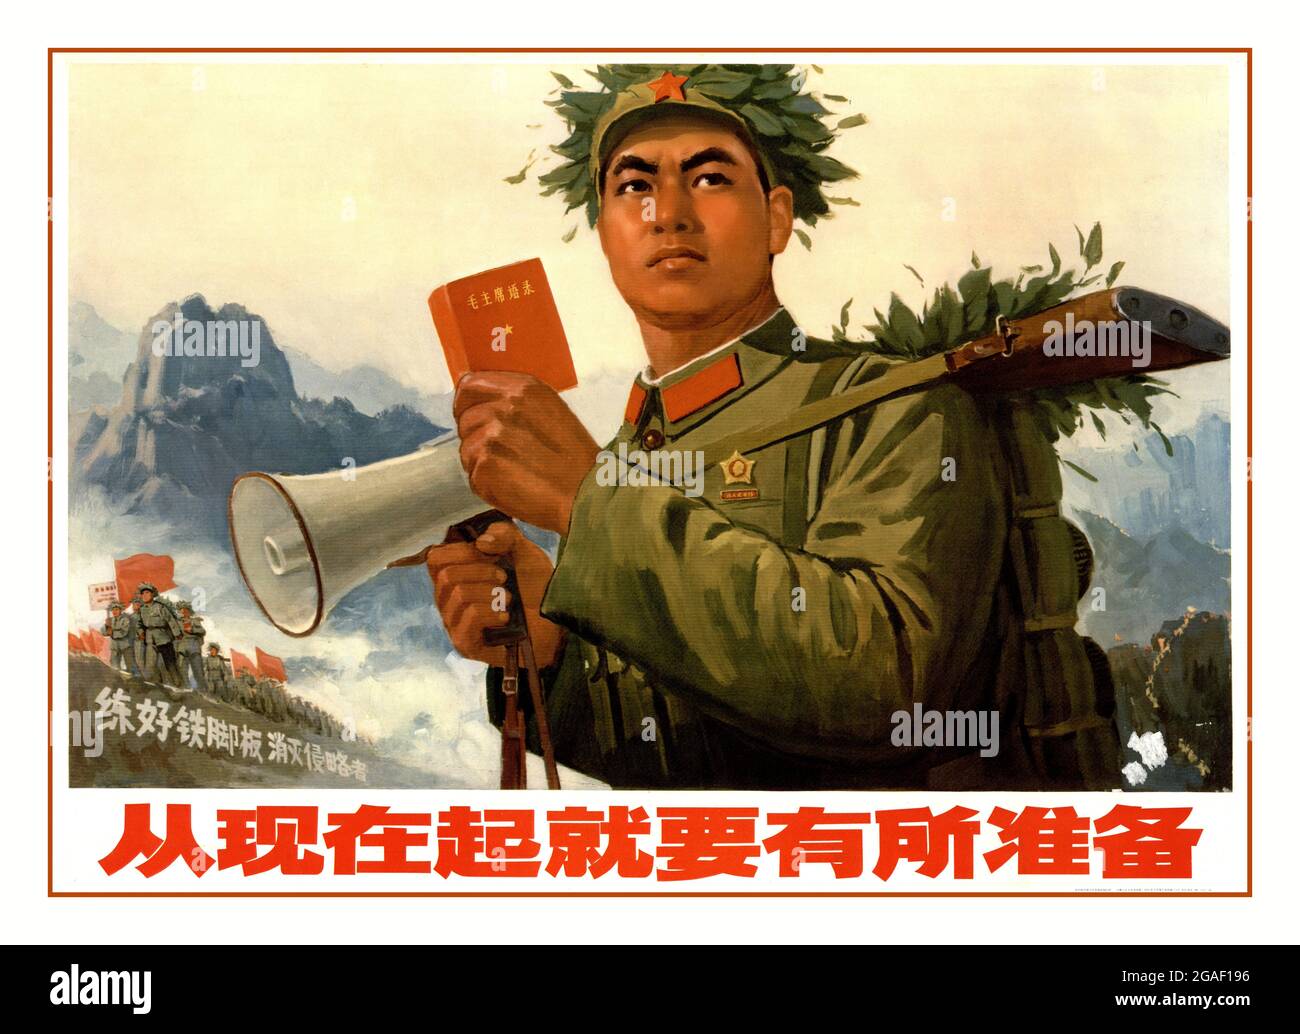 Poster Propaganda cinese anni '70 'd'ora in poi; dobbiamo aumentare la nostra preparazione un po 'di più' 1971 Soldato rivoluzionario cinese con il megafono e il libro rosso del presidente Mao. La Grande Rivoluzione culturale proletaria, conosciuta semplicemente come Rivoluzione culturale Foto Stock